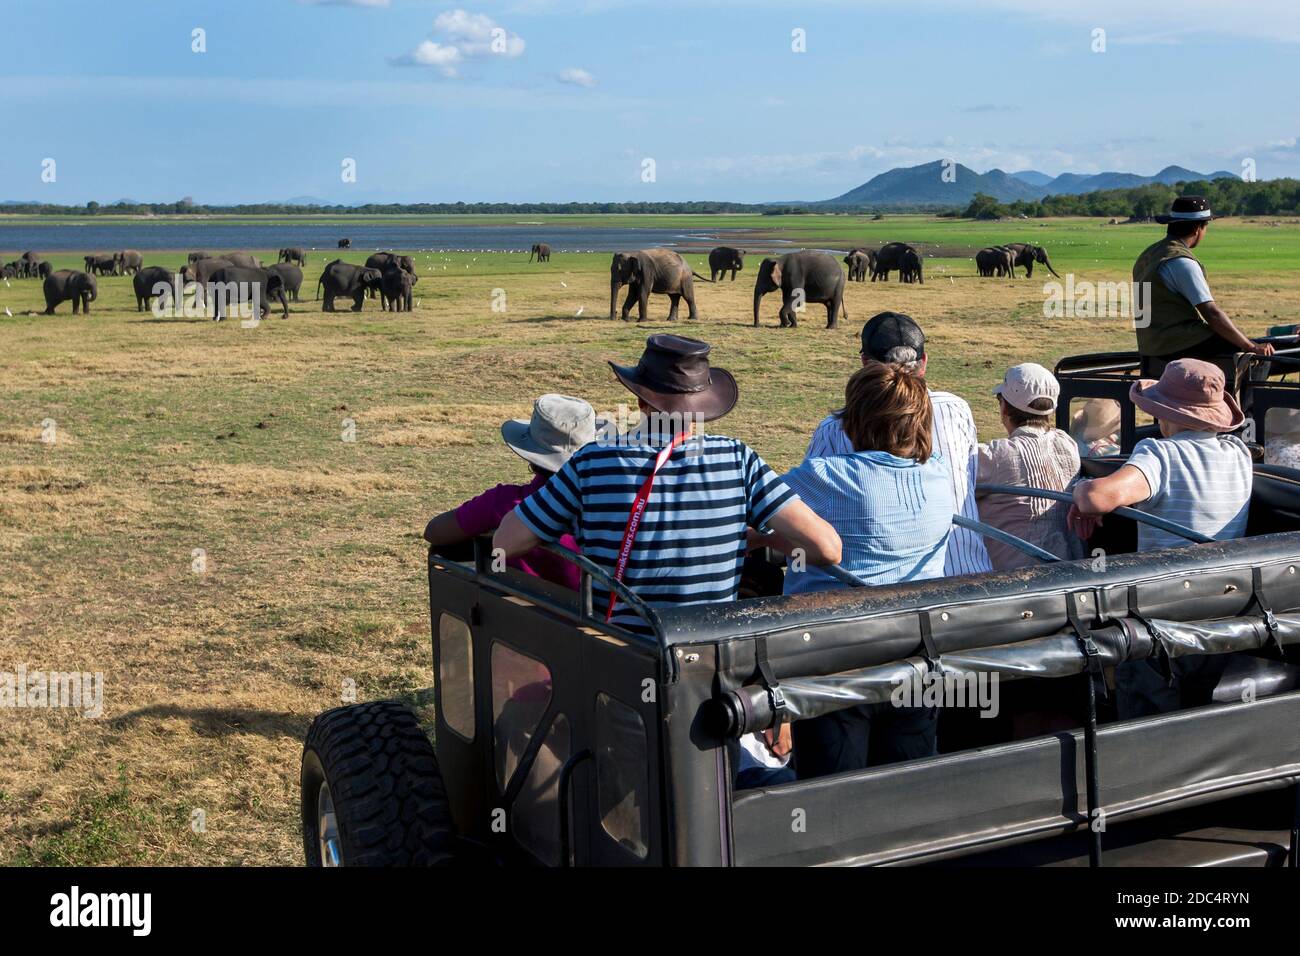 Los turistas a bordo de un jeep safari observan una manada de elefantes salvajes pastando en el Parque Nacional de Minneriya. El parque está situado en el centro de Sri Lanka. Foto de stock